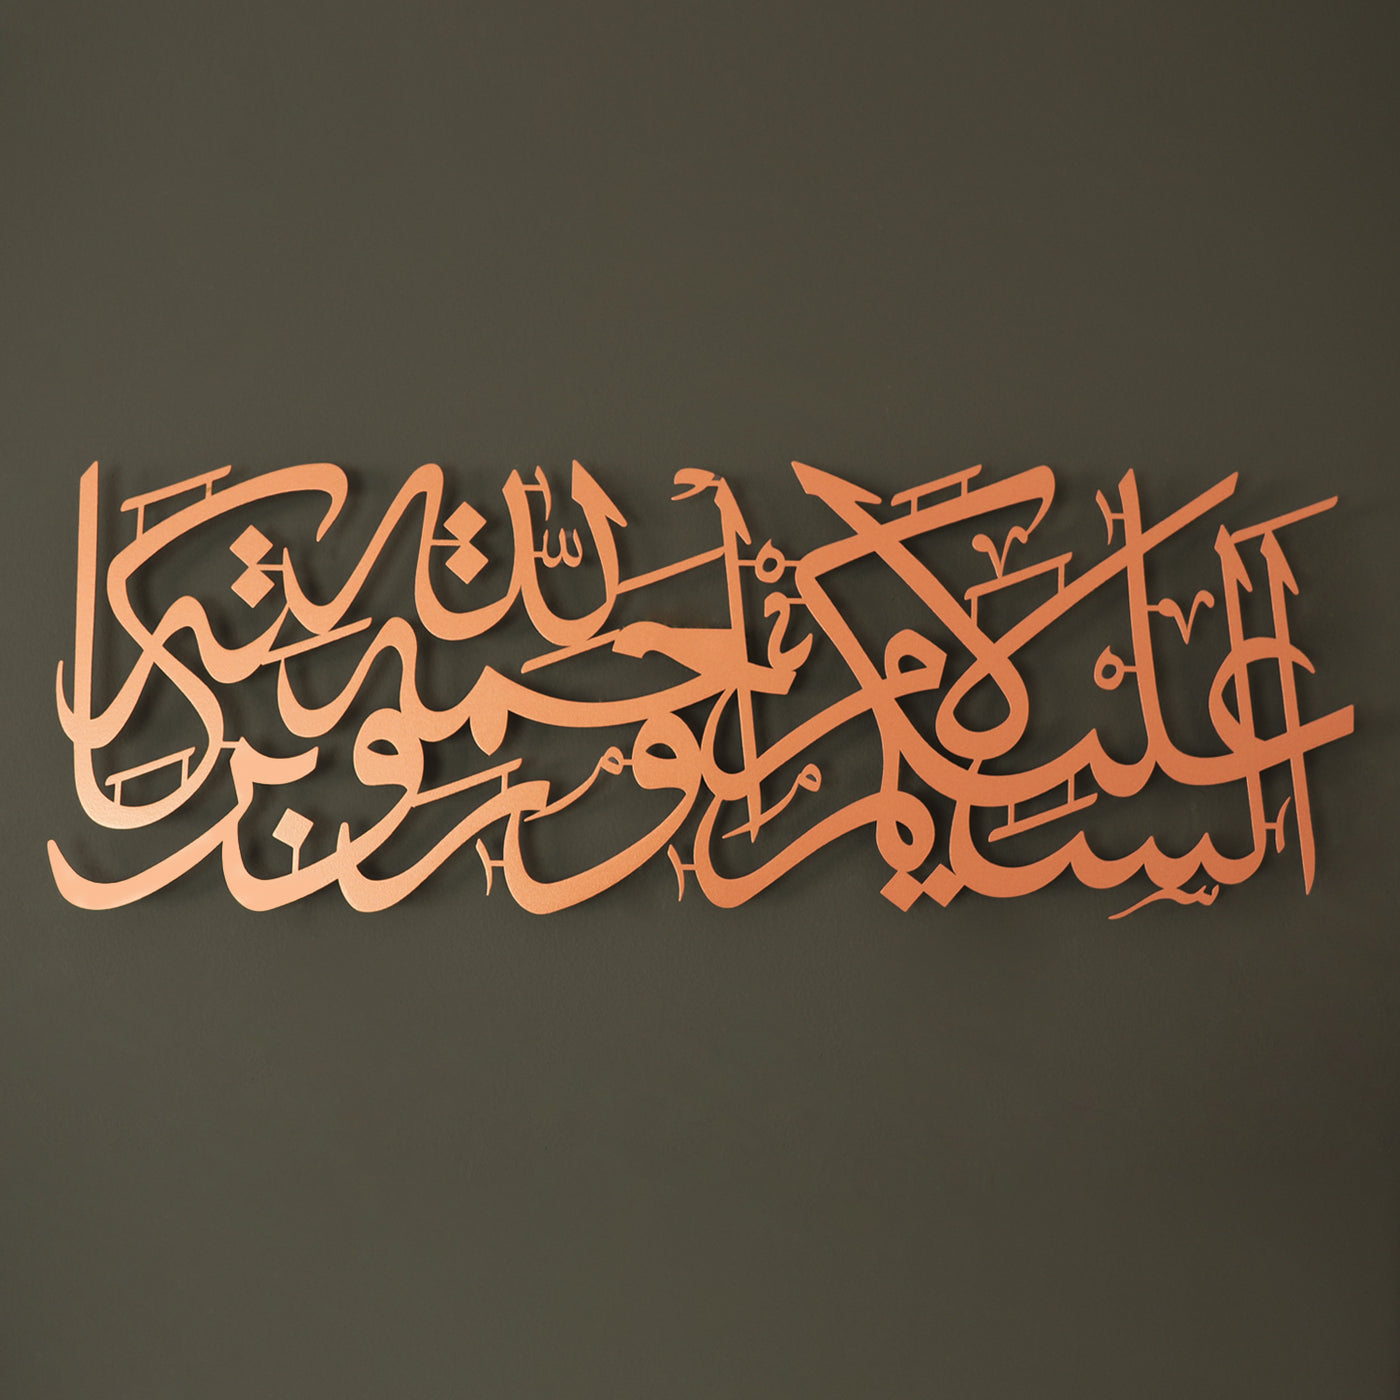 WAM157 - لوحة ( السلام عليكم ورحة الله وبركاته ) من المعدن